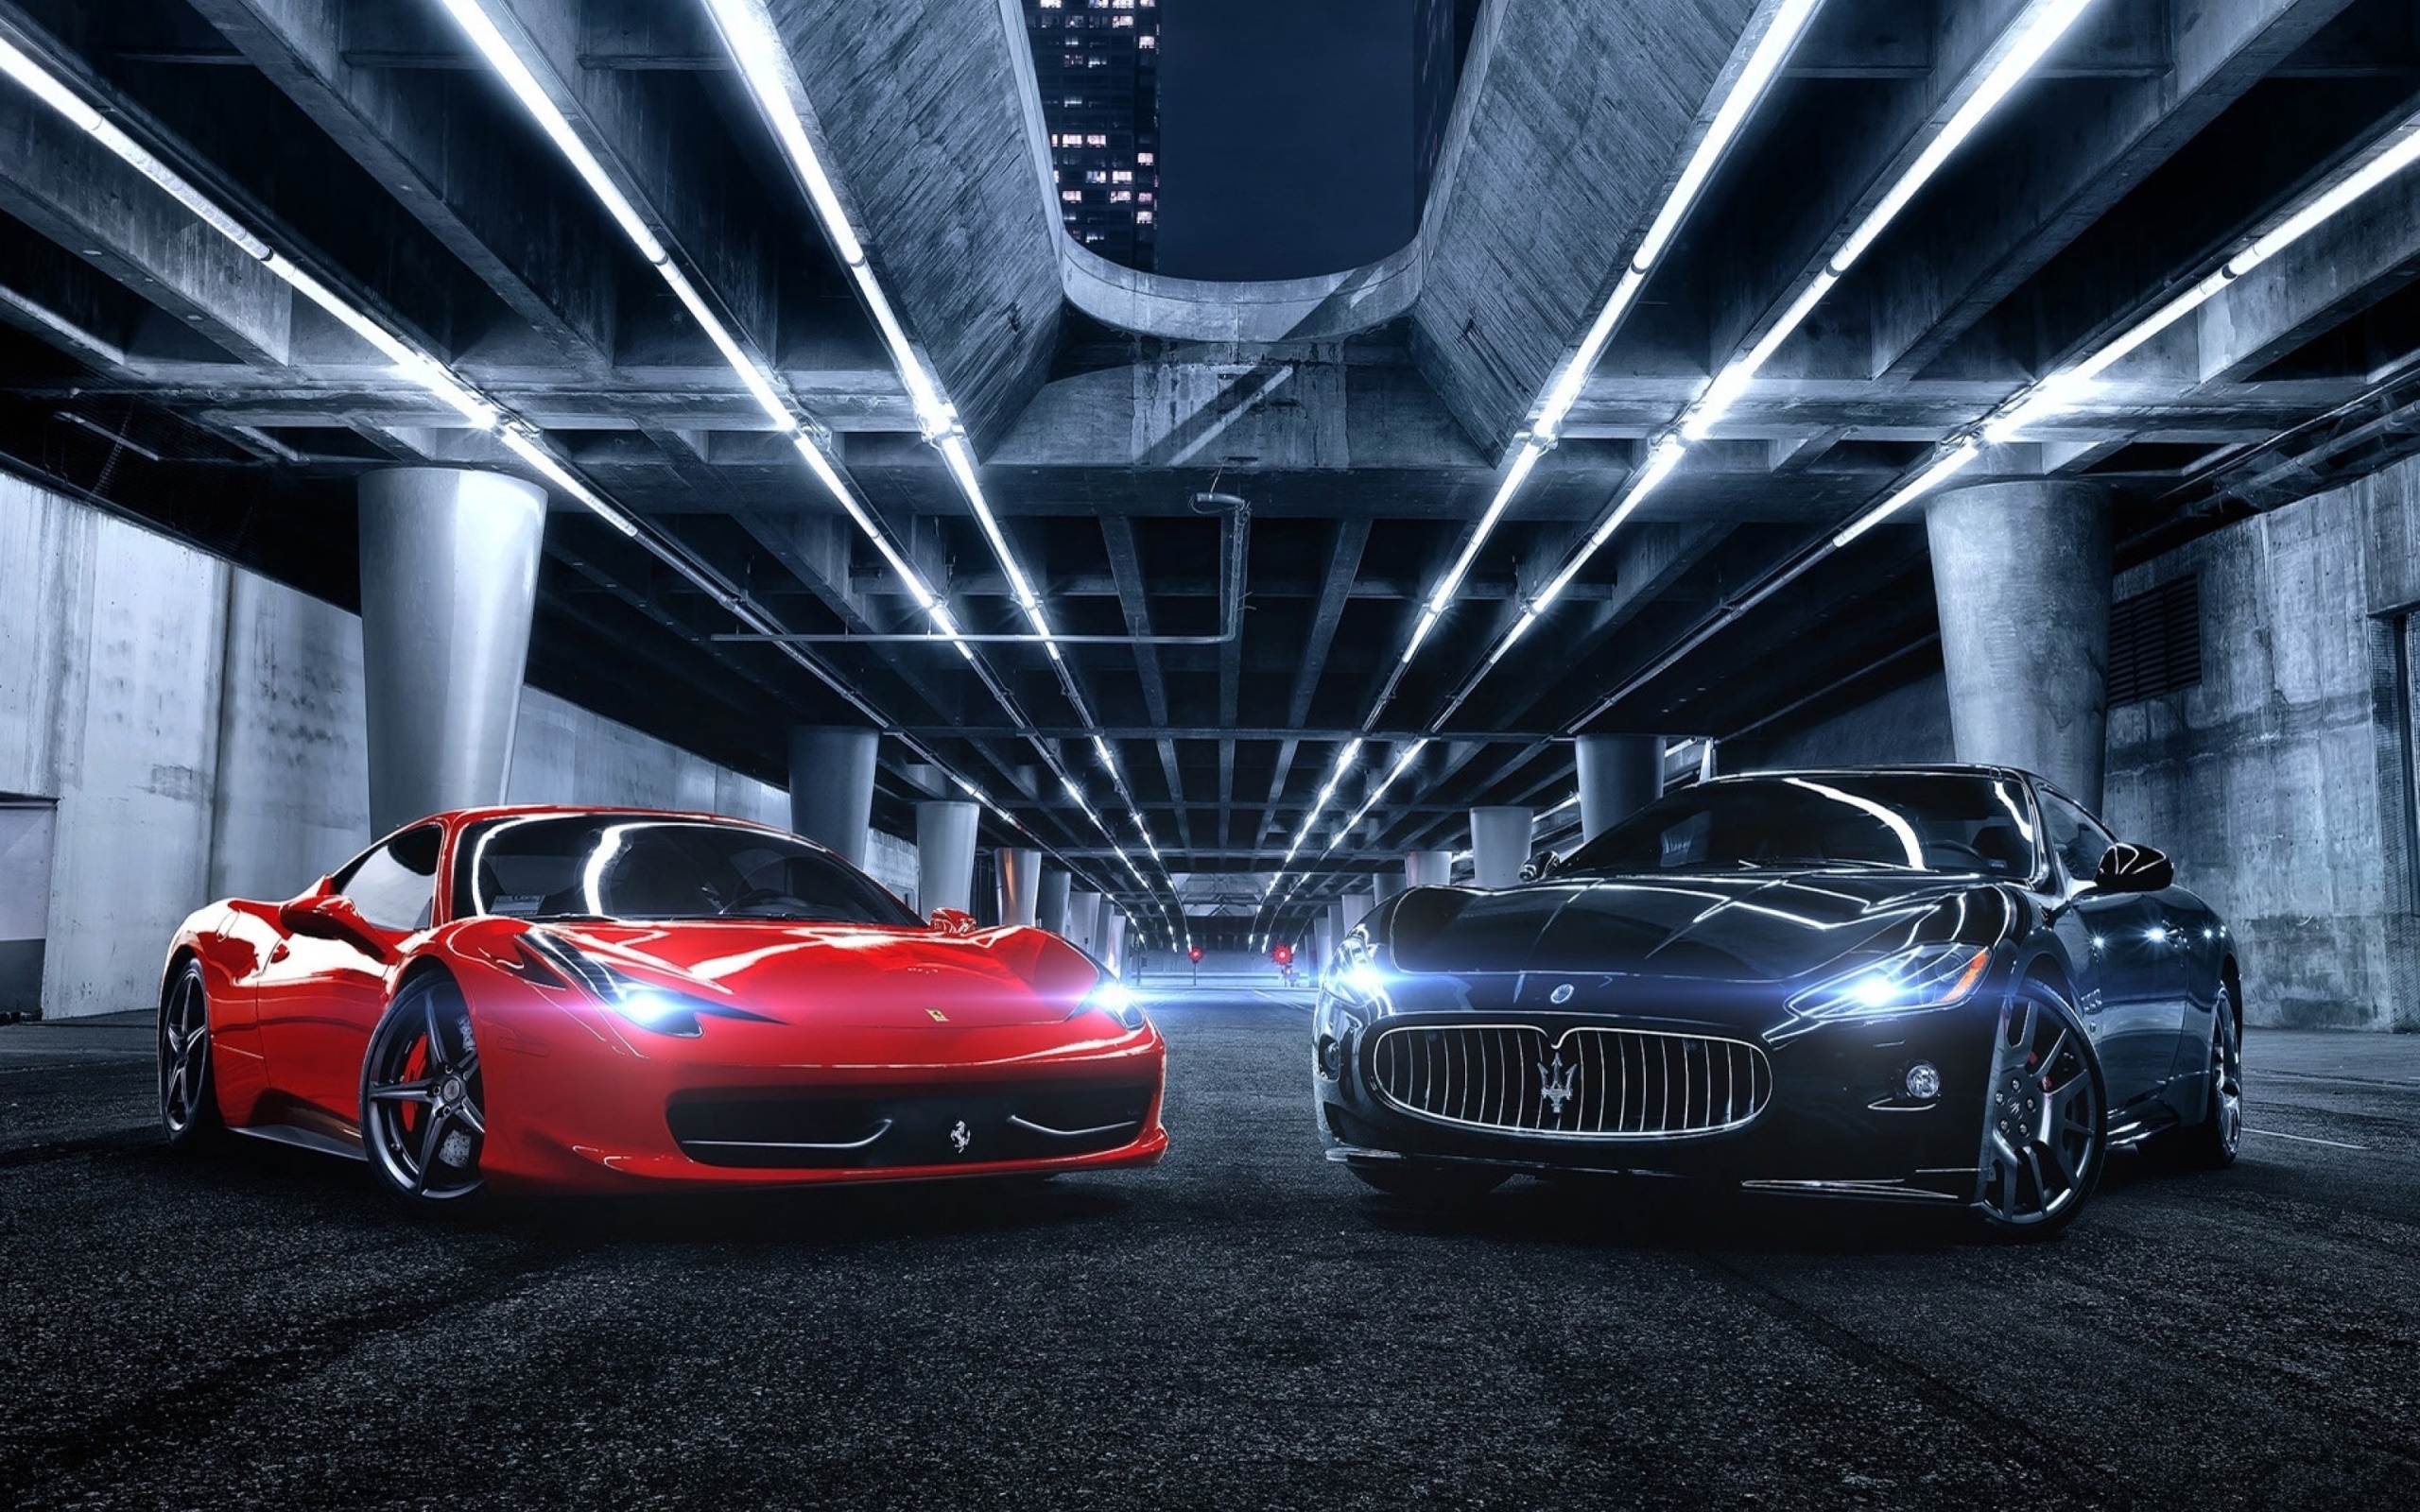 Das Ferrari compare Maserati Wallpaper 2560x1600